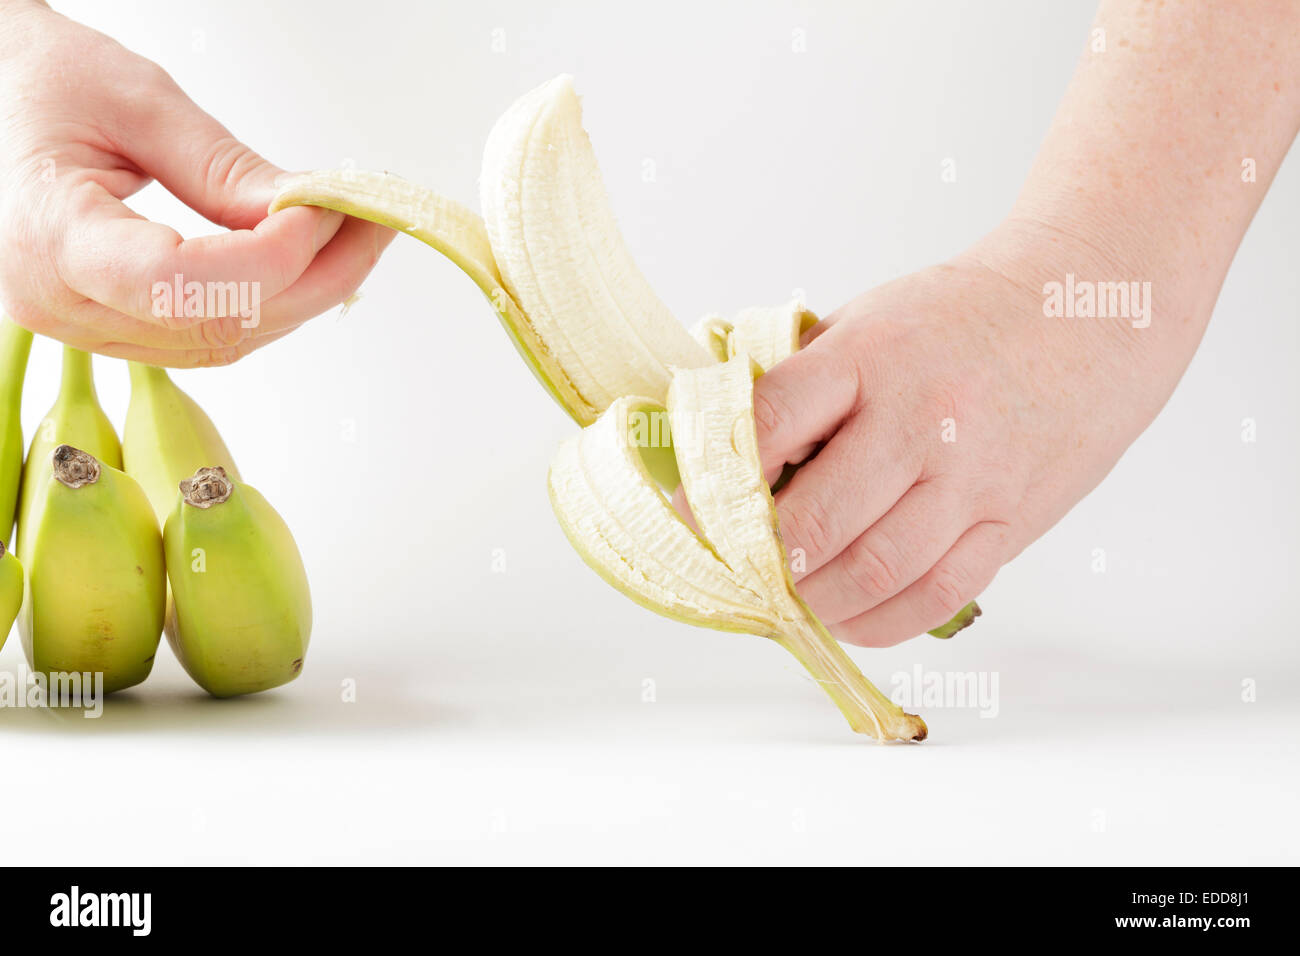 Hände, die eine Banane schälen Stockfoto